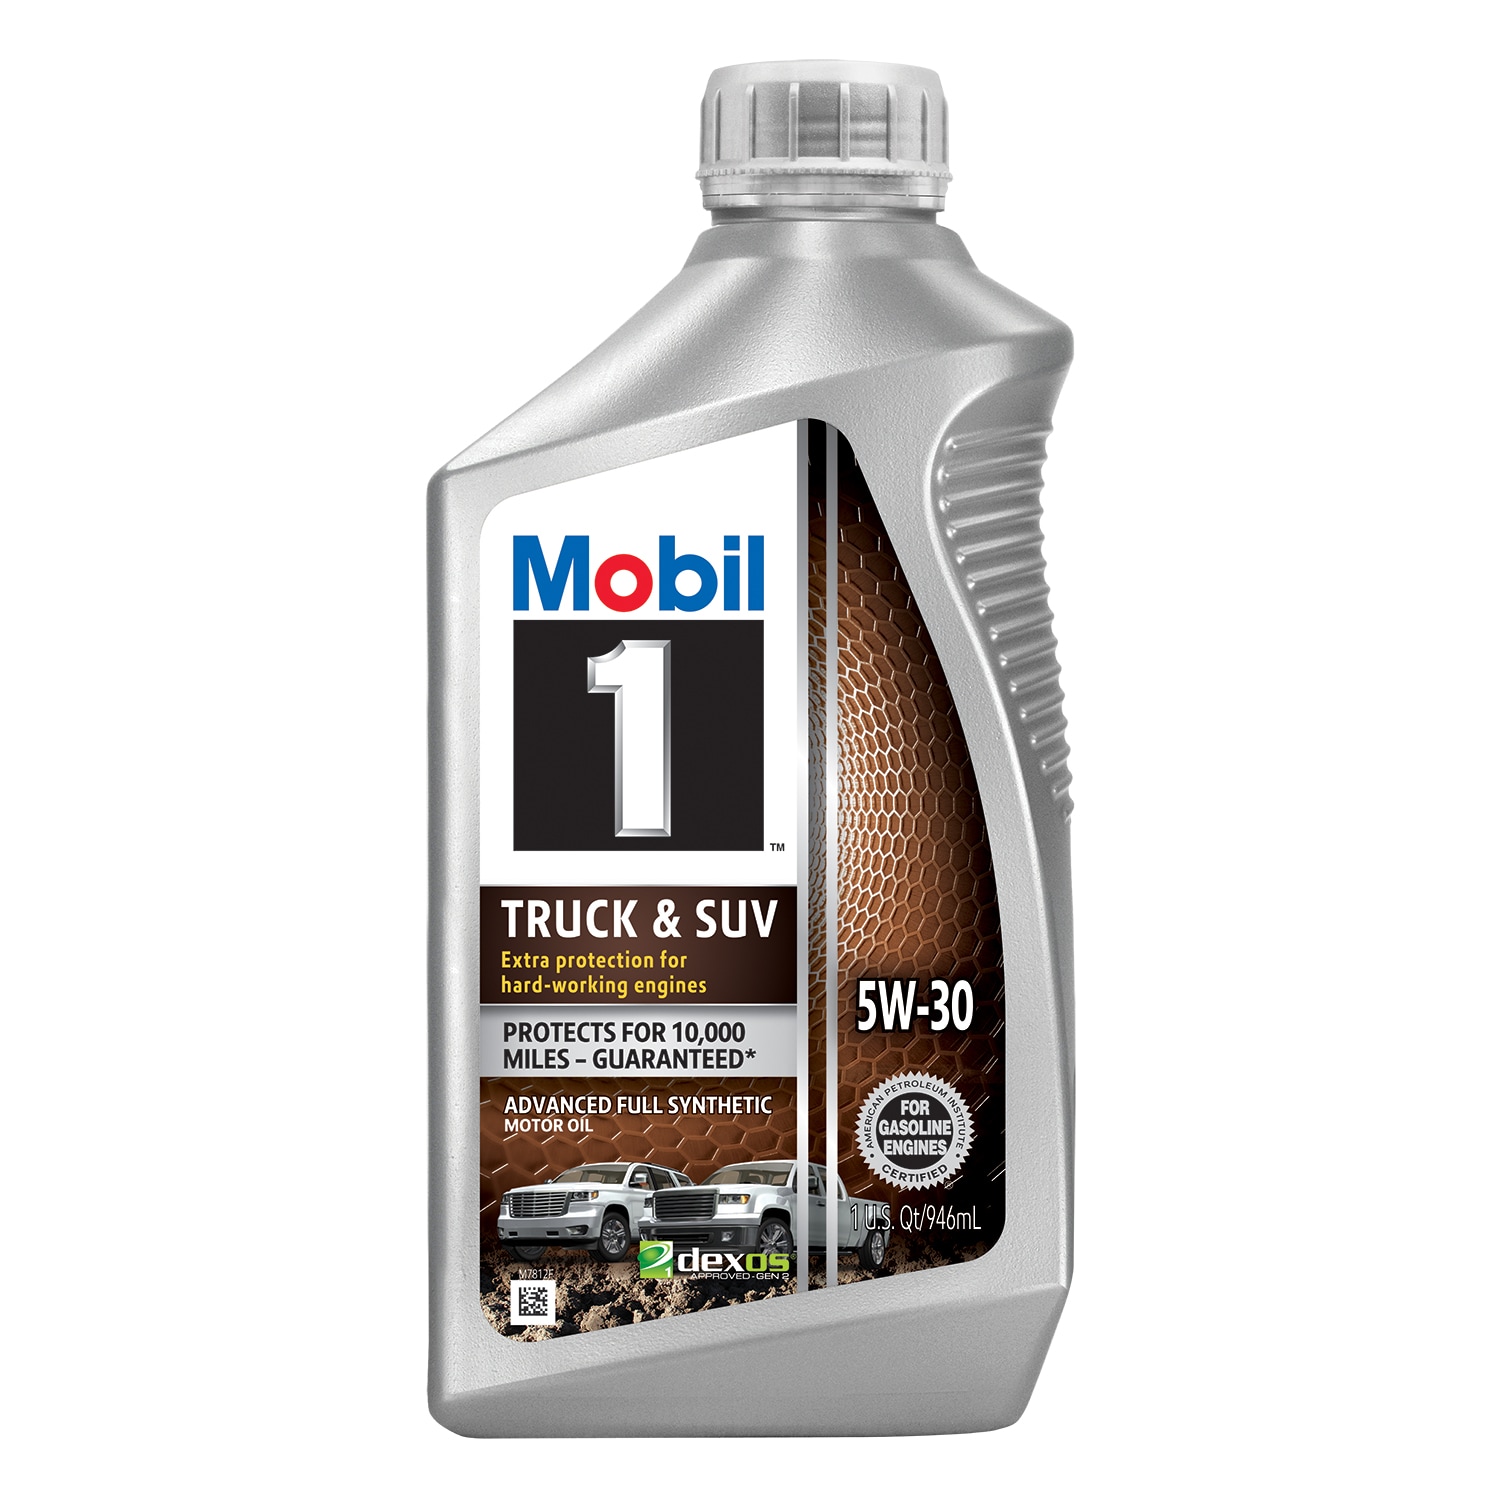 Mobil 1 5W-30 Advanced Full Synthetic Motor Oil Quart Bottle